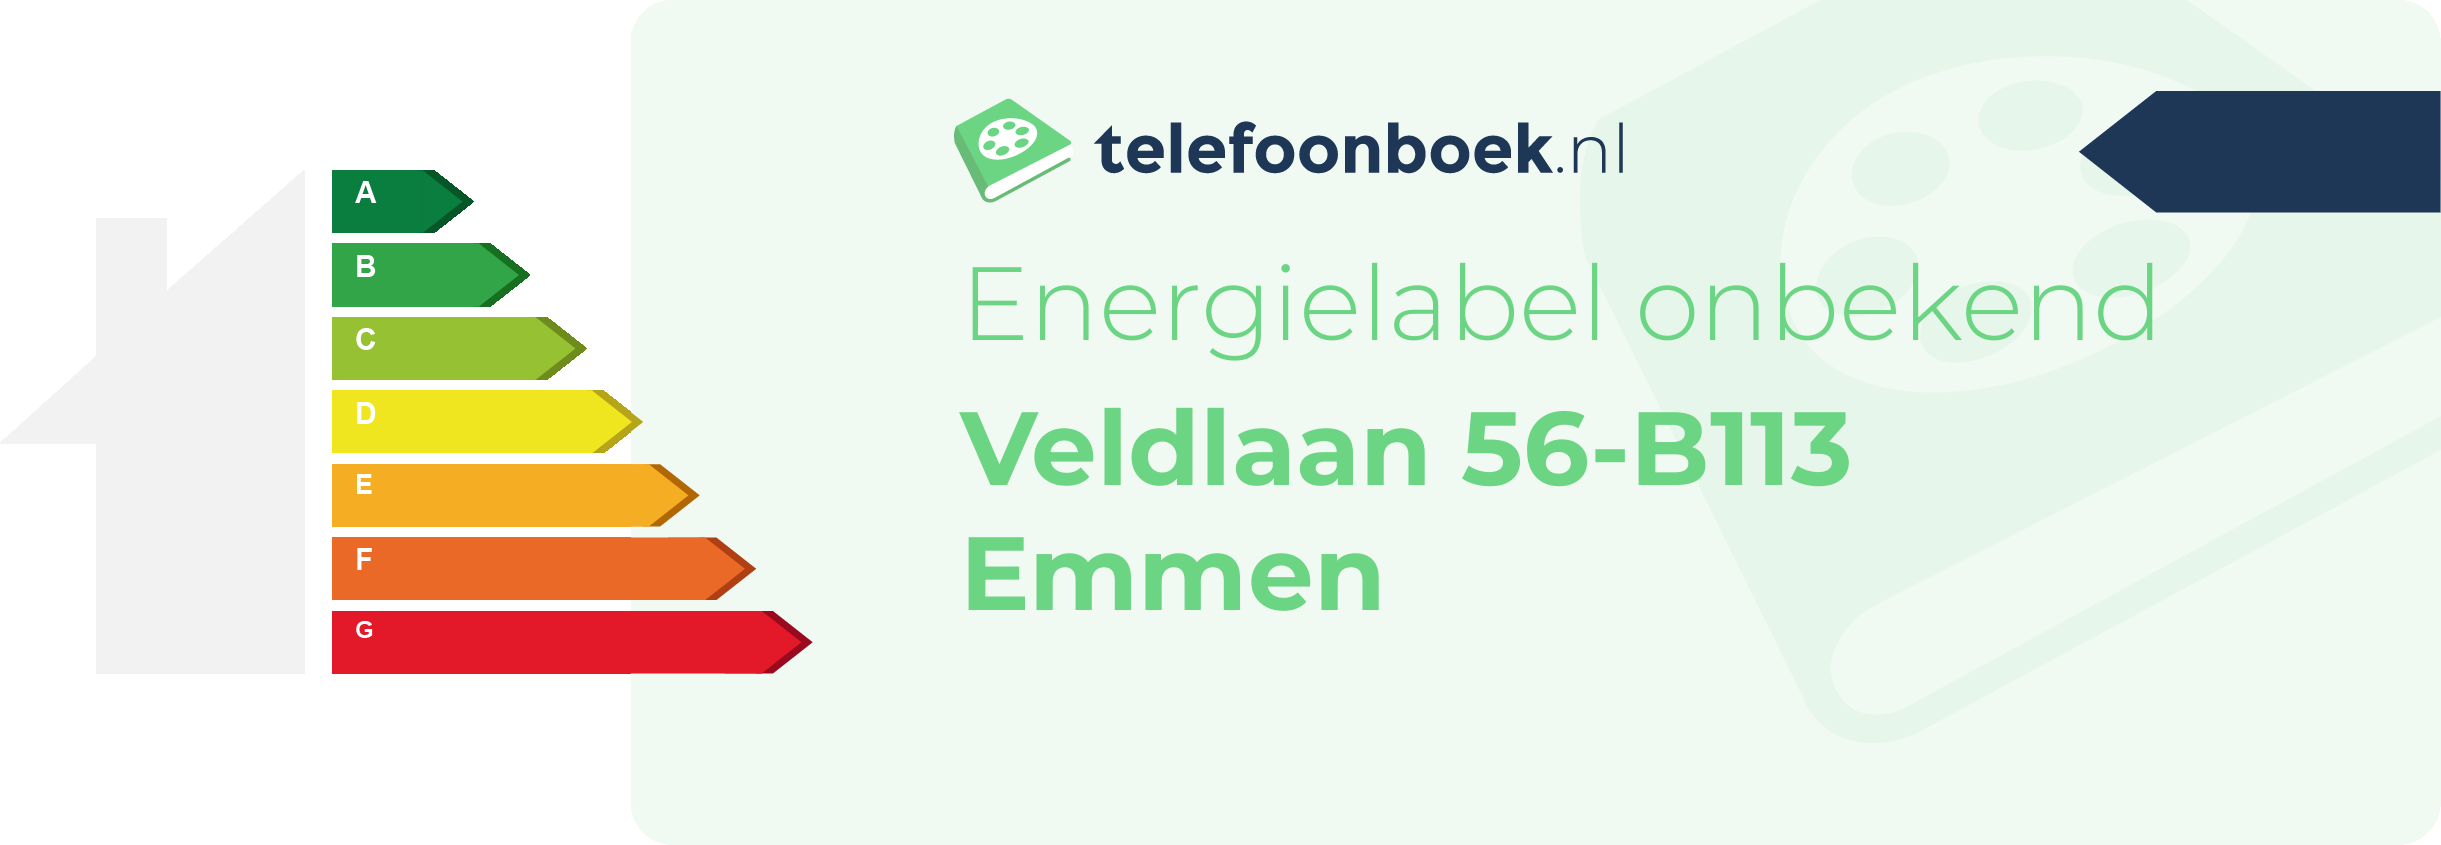 Energielabel Veldlaan 56-B113 Emmen